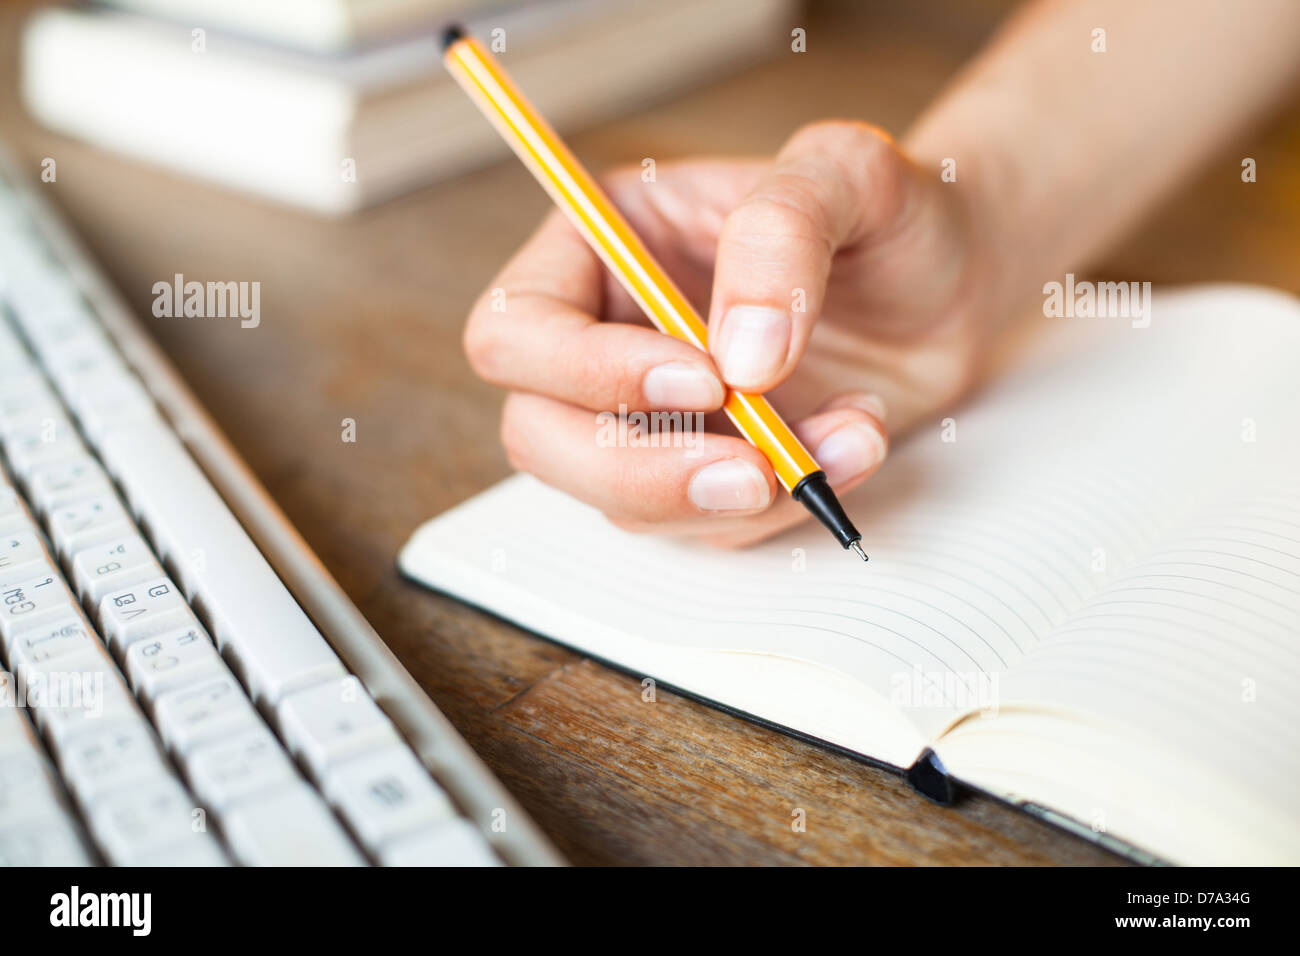 Händen schreibt einen Stift in einem Notebook, Computer-Tastatur und einen Stapel Bücher im Hintergrund. Stockfoto